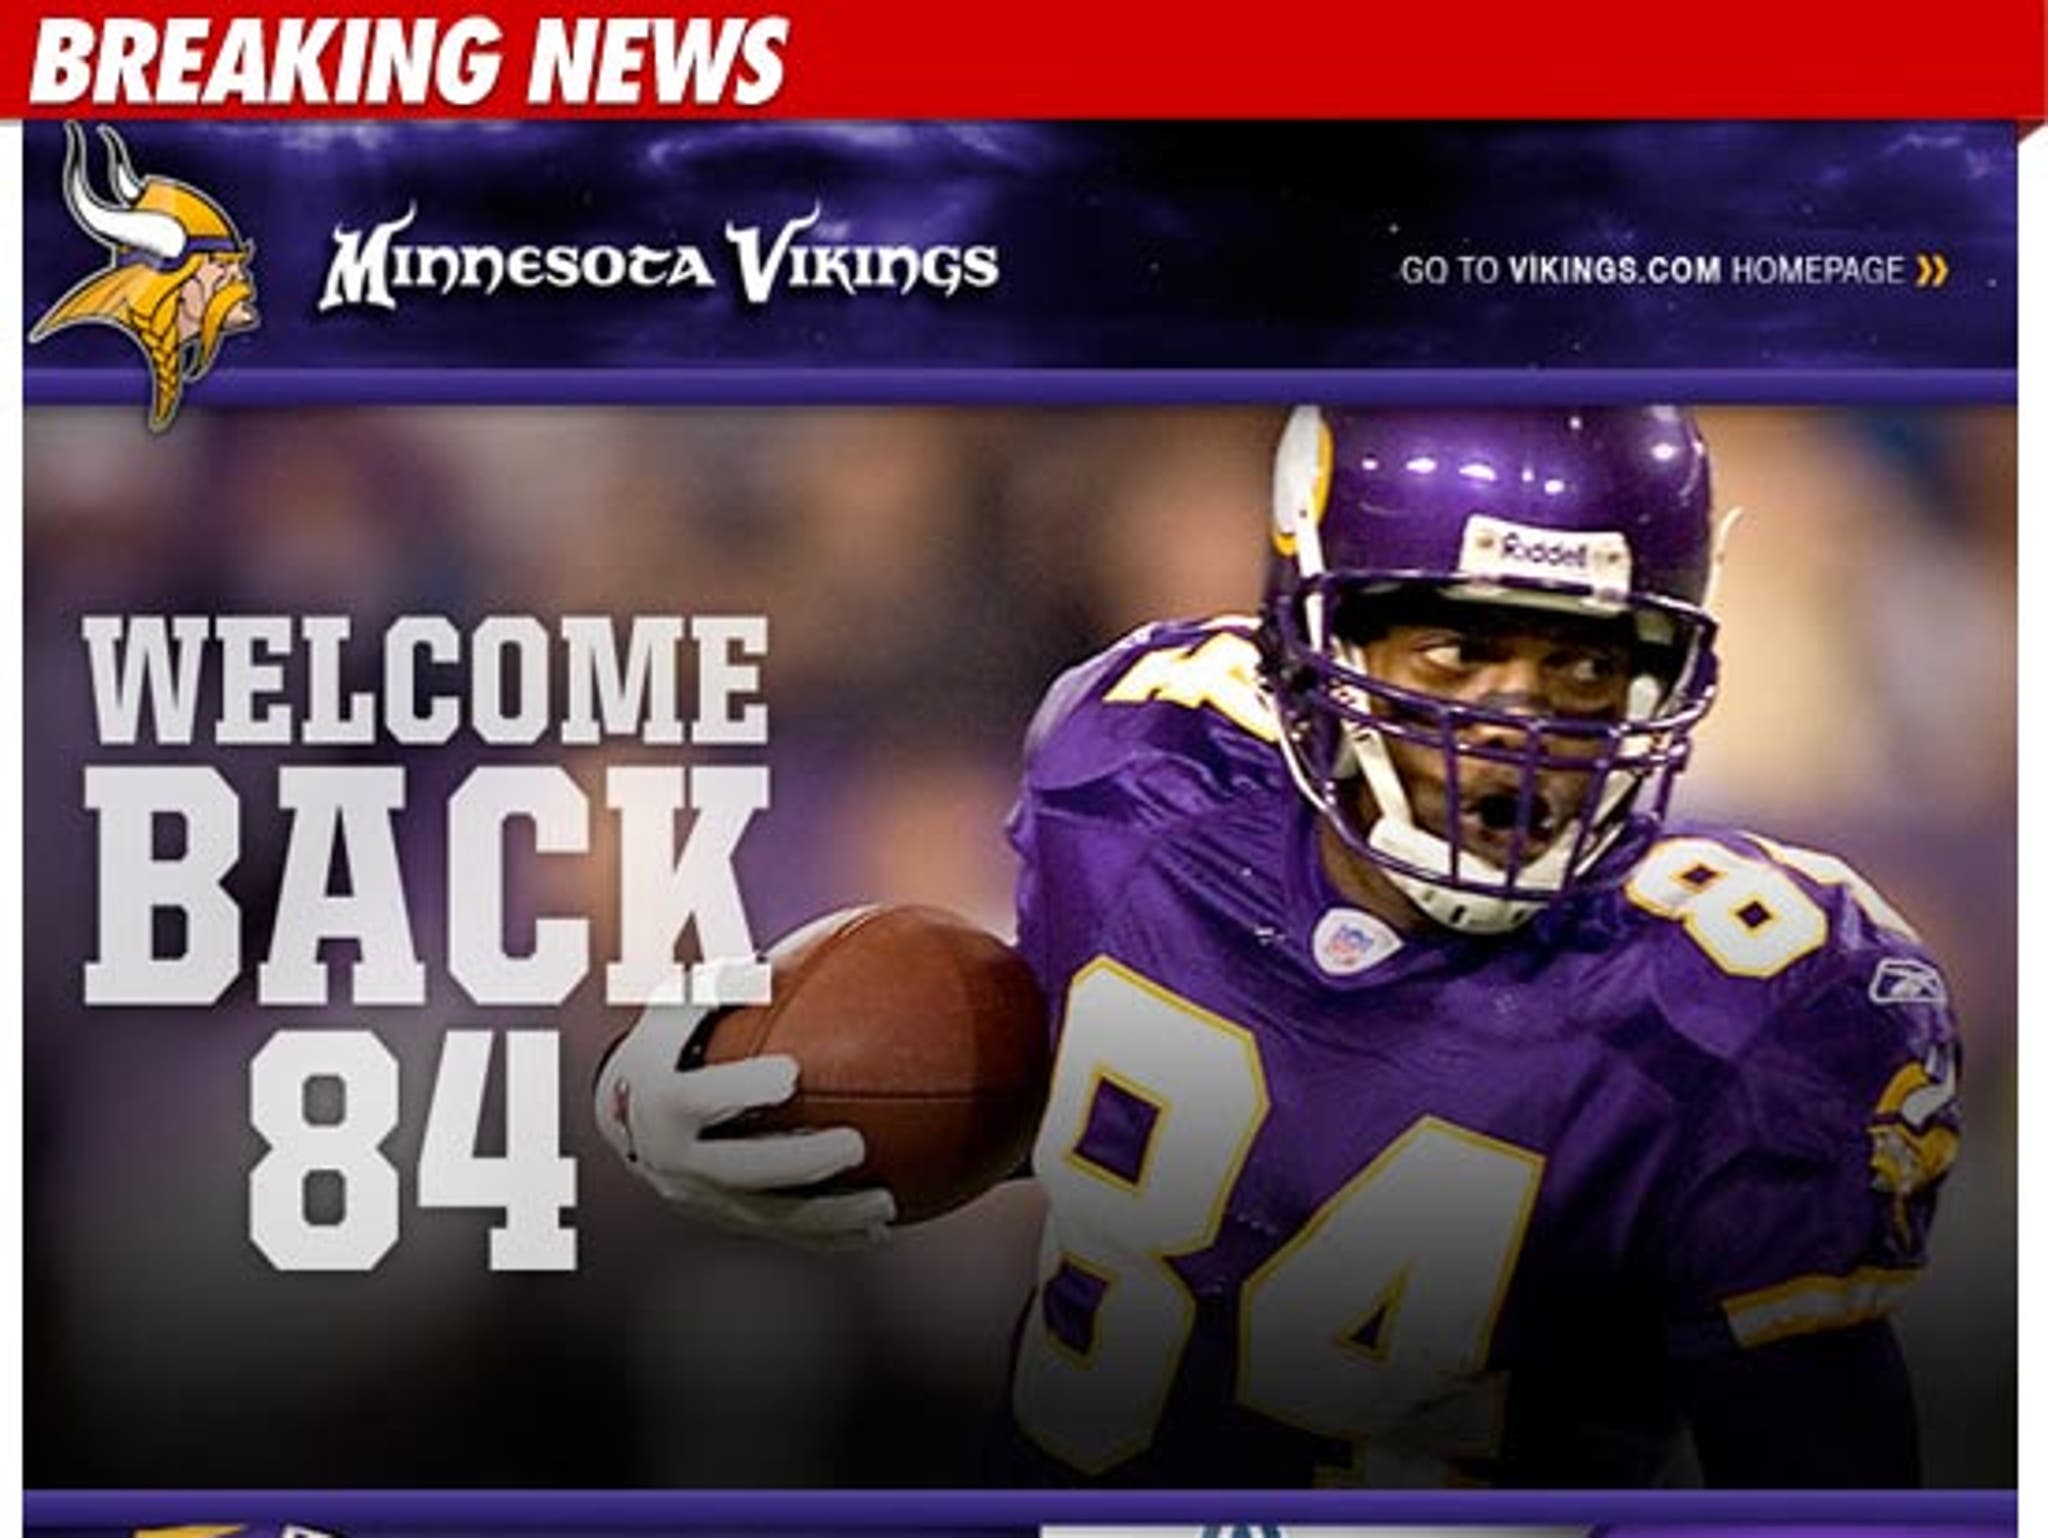 Randy Moss Trade -- Minnesota Vikings Already Selling Moss Jerseys